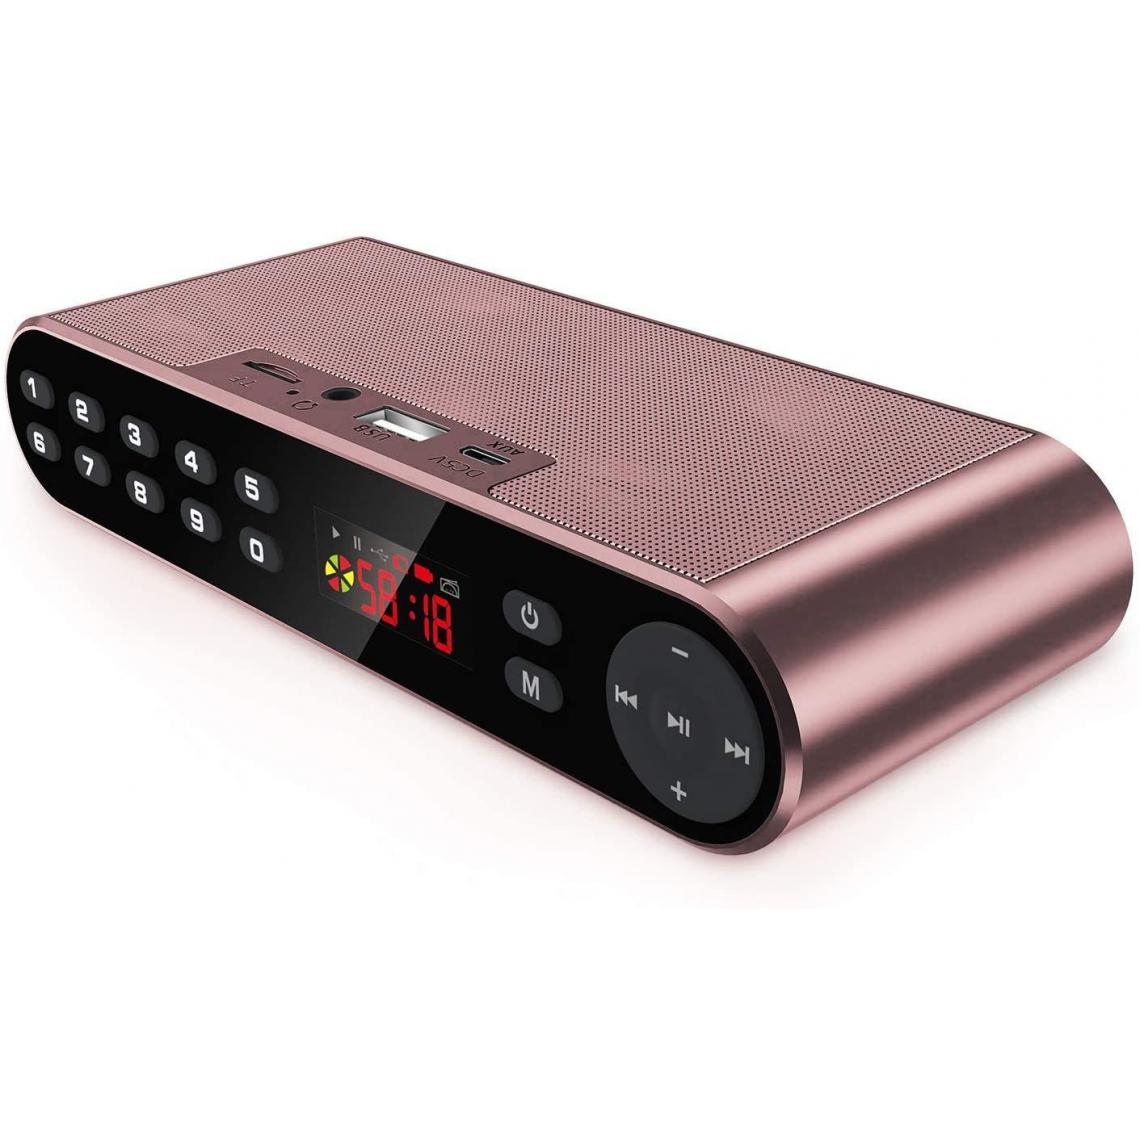 Chrono - Haut-parleur Bluetooth sans fil, portable, avec radio FM numérique, lecteur MP6 et puissant microphone intégré et deux haut-parleurs,Rouge - Enceintes Hifi